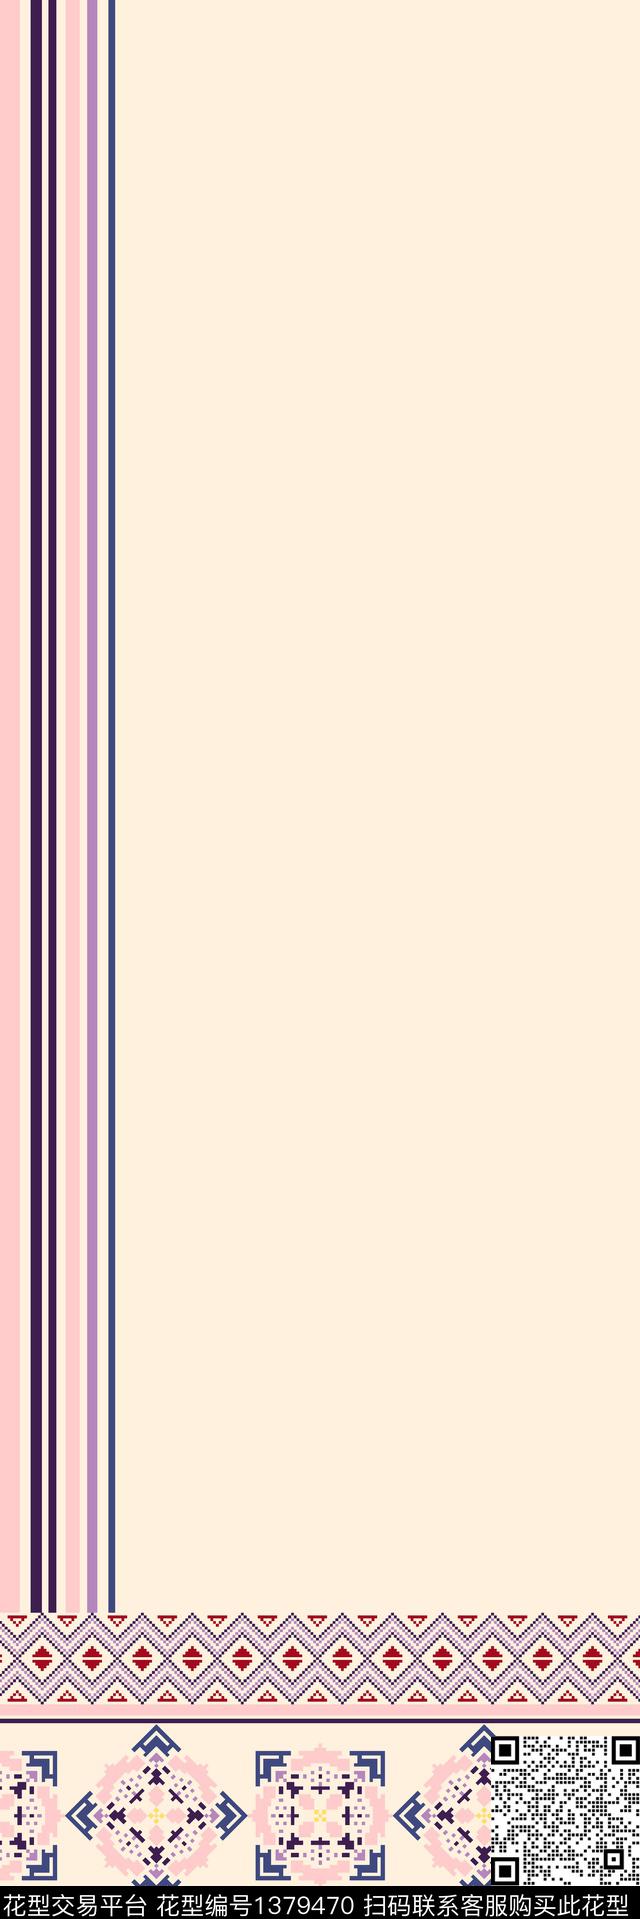 羊绒长巾1.jpg - 1379470 - 线条 几何 撞色 - 传统印花花型 － 长巾花型设计 － 瓦栏